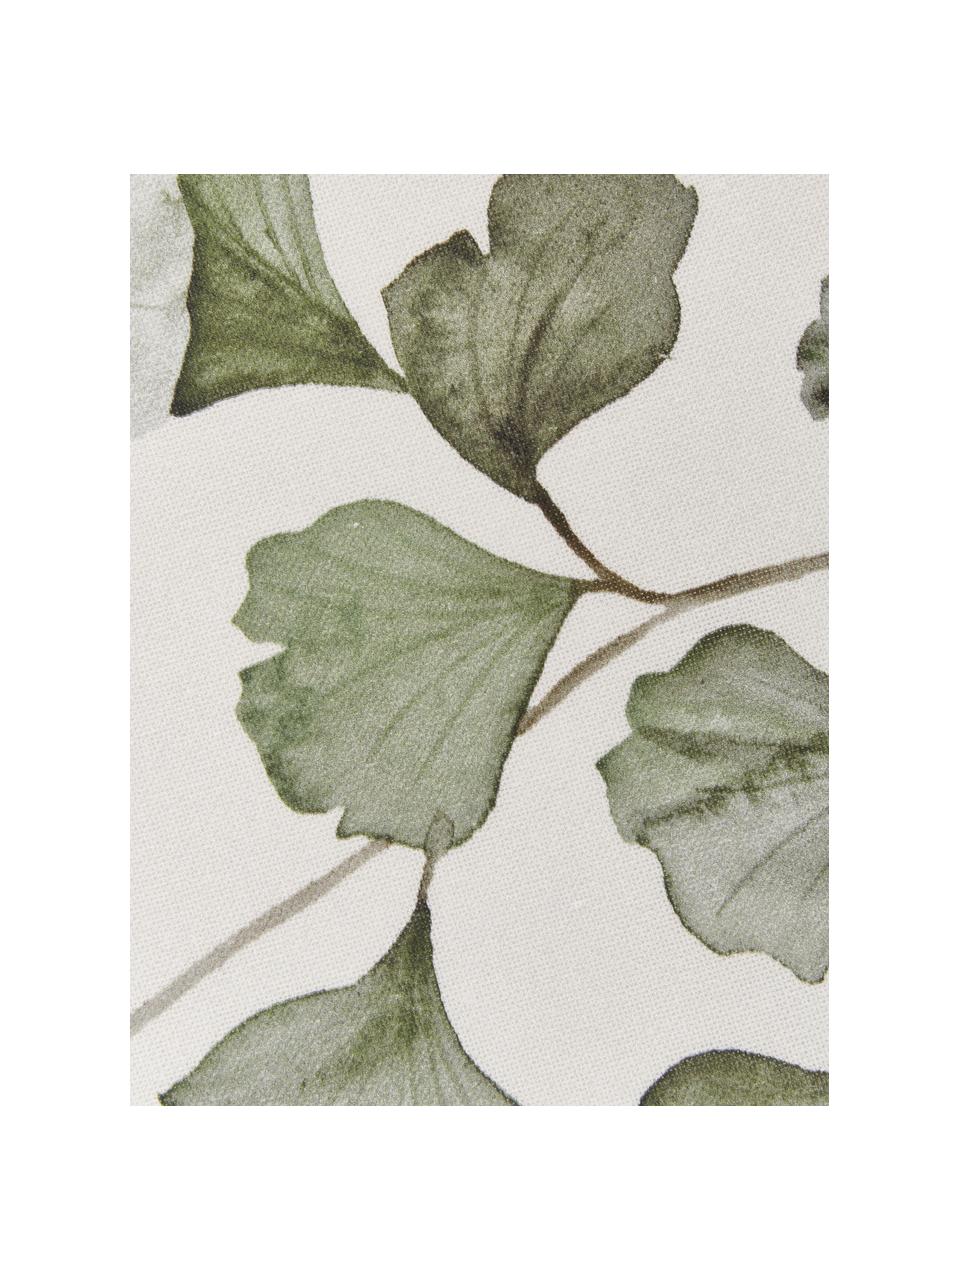 Baumwoll-Geschirrtücher Gigi mit Blättermotiven, 2 Stück, 100 % Baumwolle, Beige, Grün, B 50 x L 70 cm